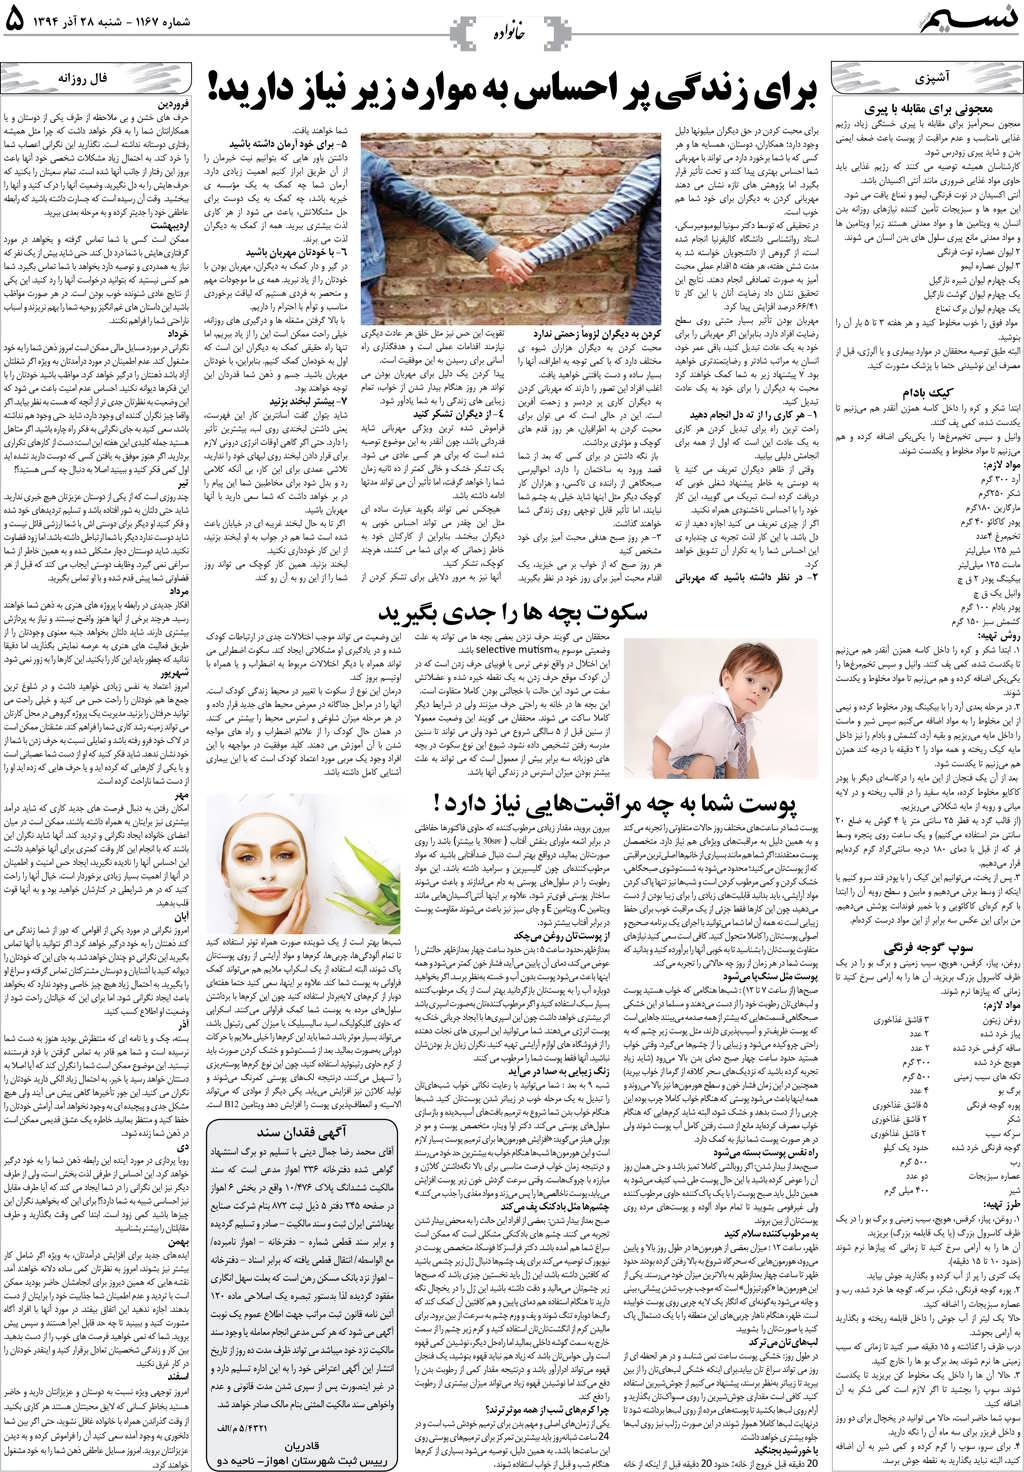 صفحه خانواده روزنامه نسیم شماره 1167